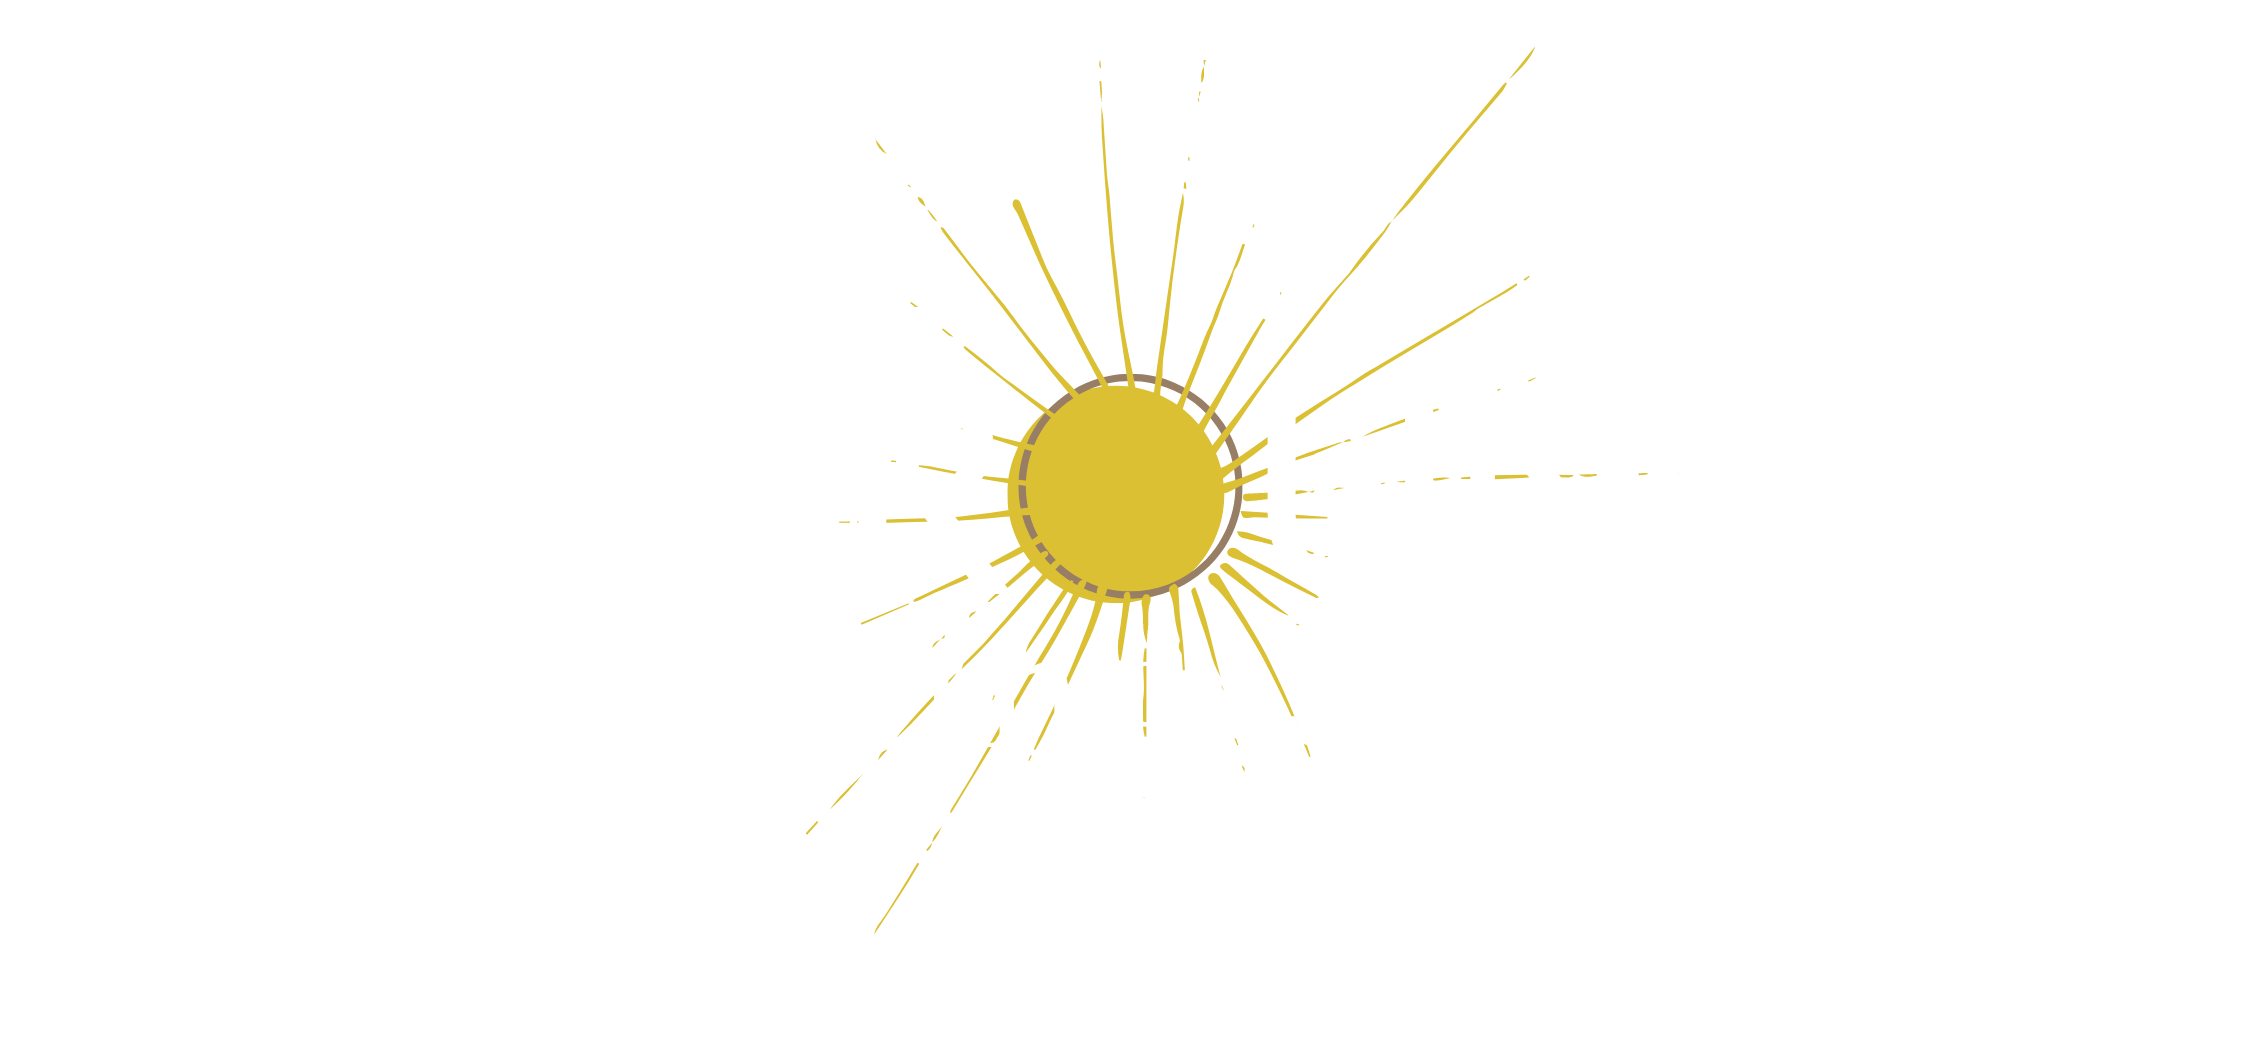 All Round Gardening Services